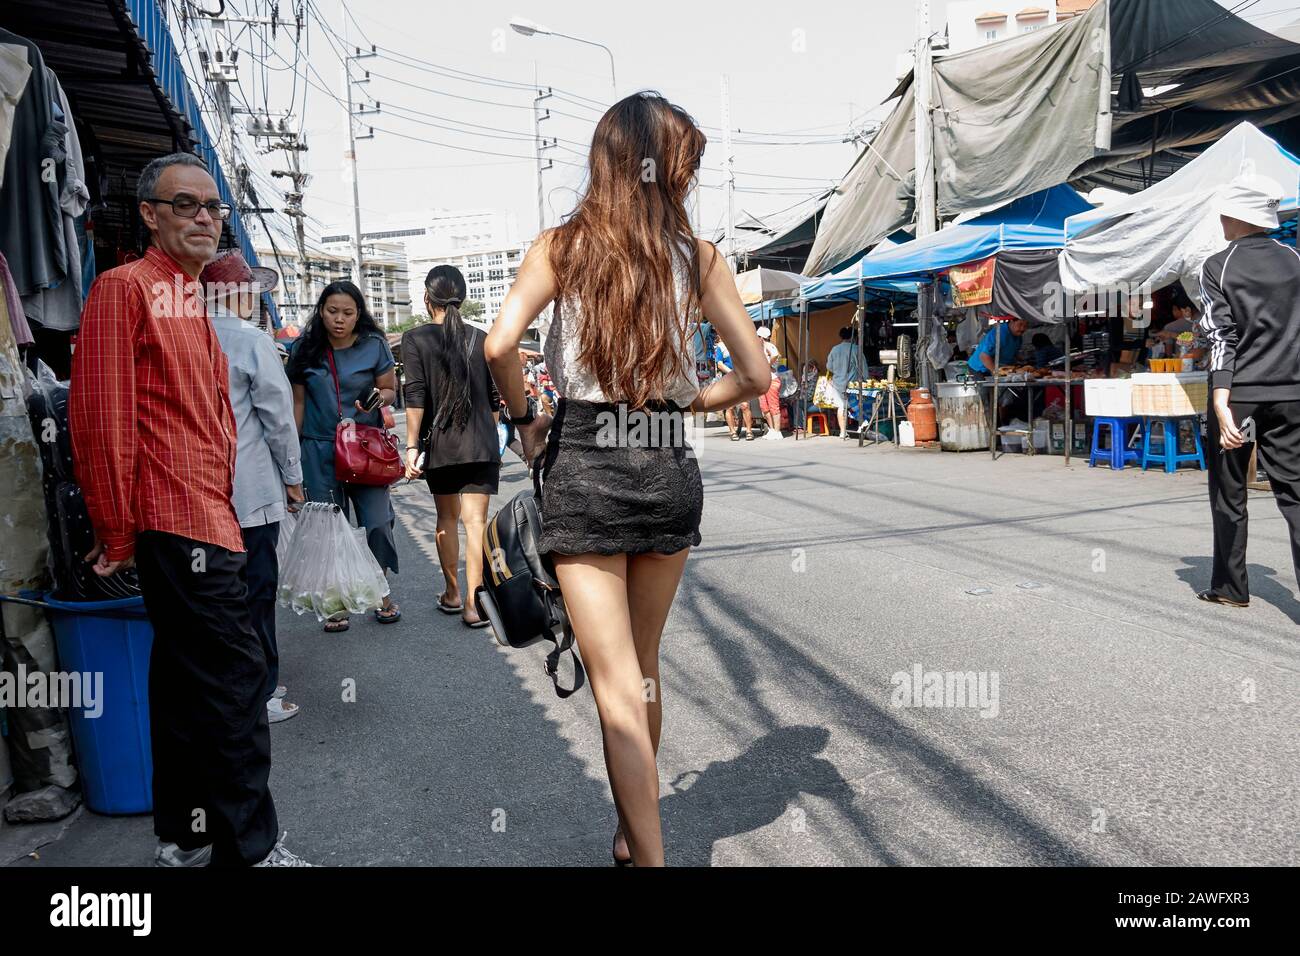 Frau trägt einen Minirock zieht einen flüchtigen Blick von männlichen Bewunderer; Thailand Straße Stockfoto